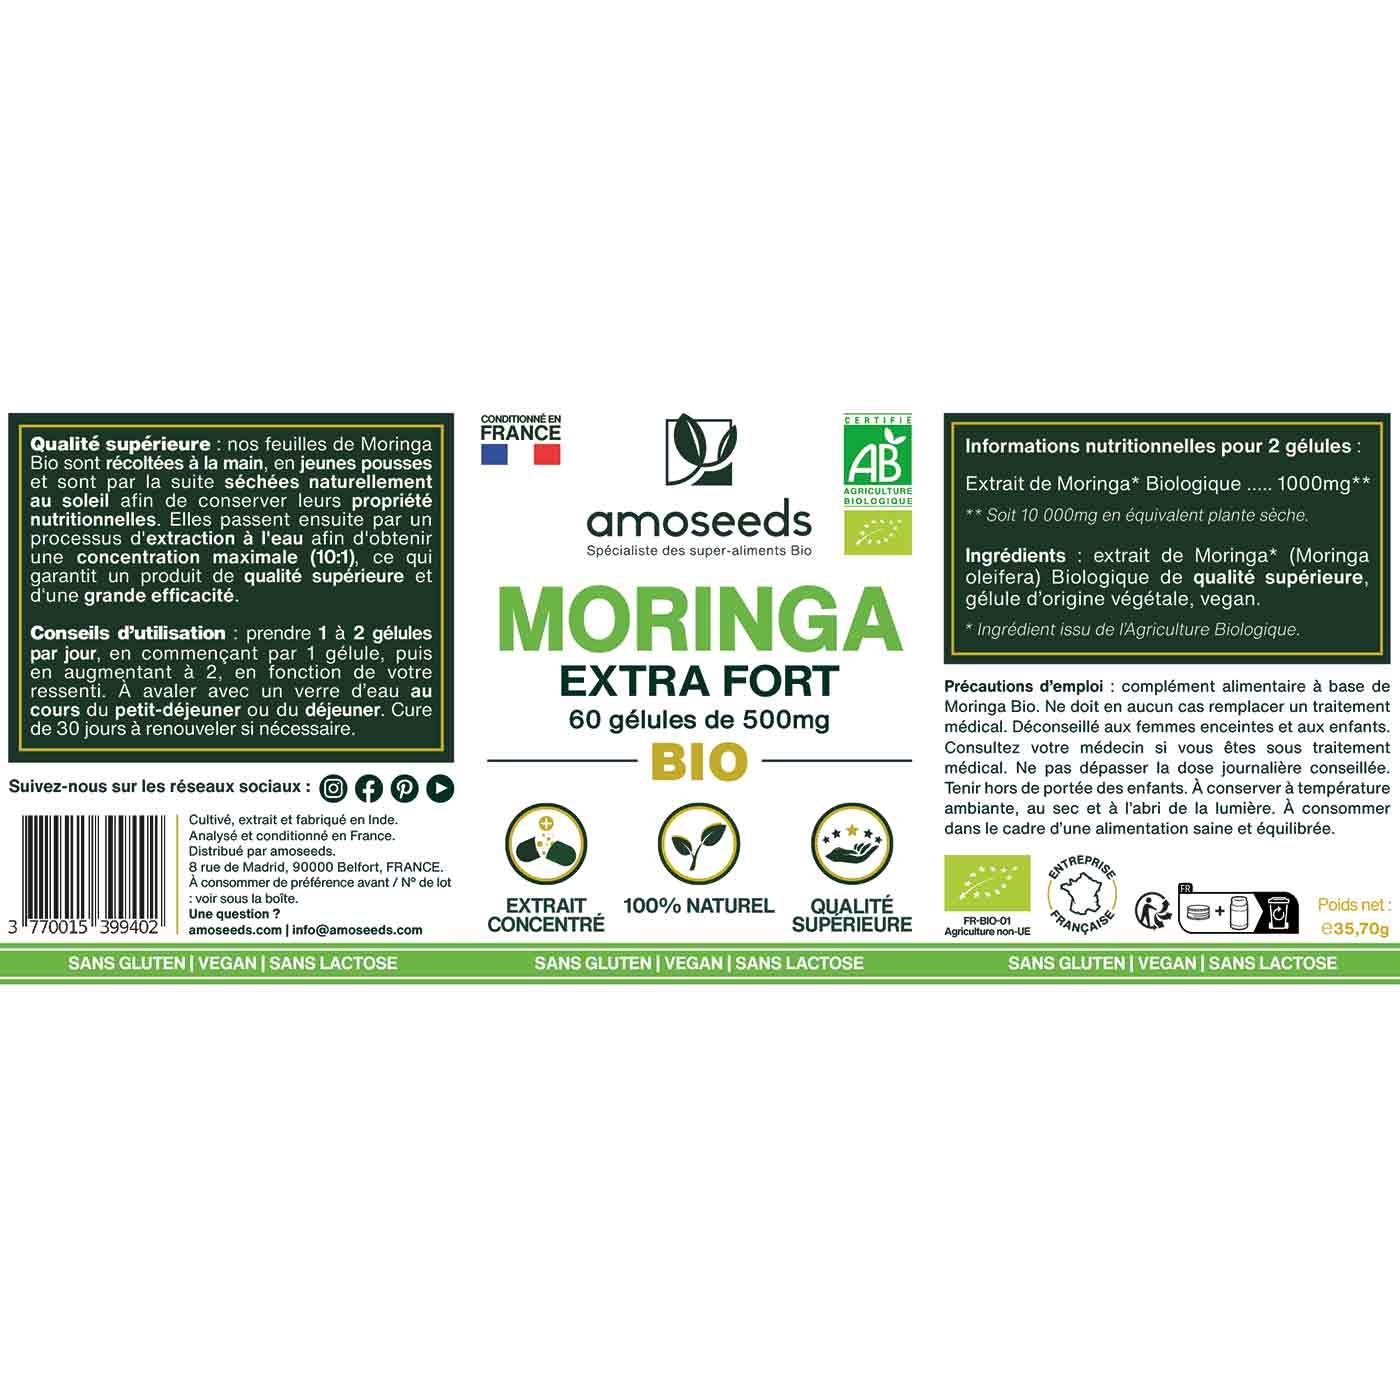 Moringa Bio gelules amoseeds specialiste des super aliments Bio